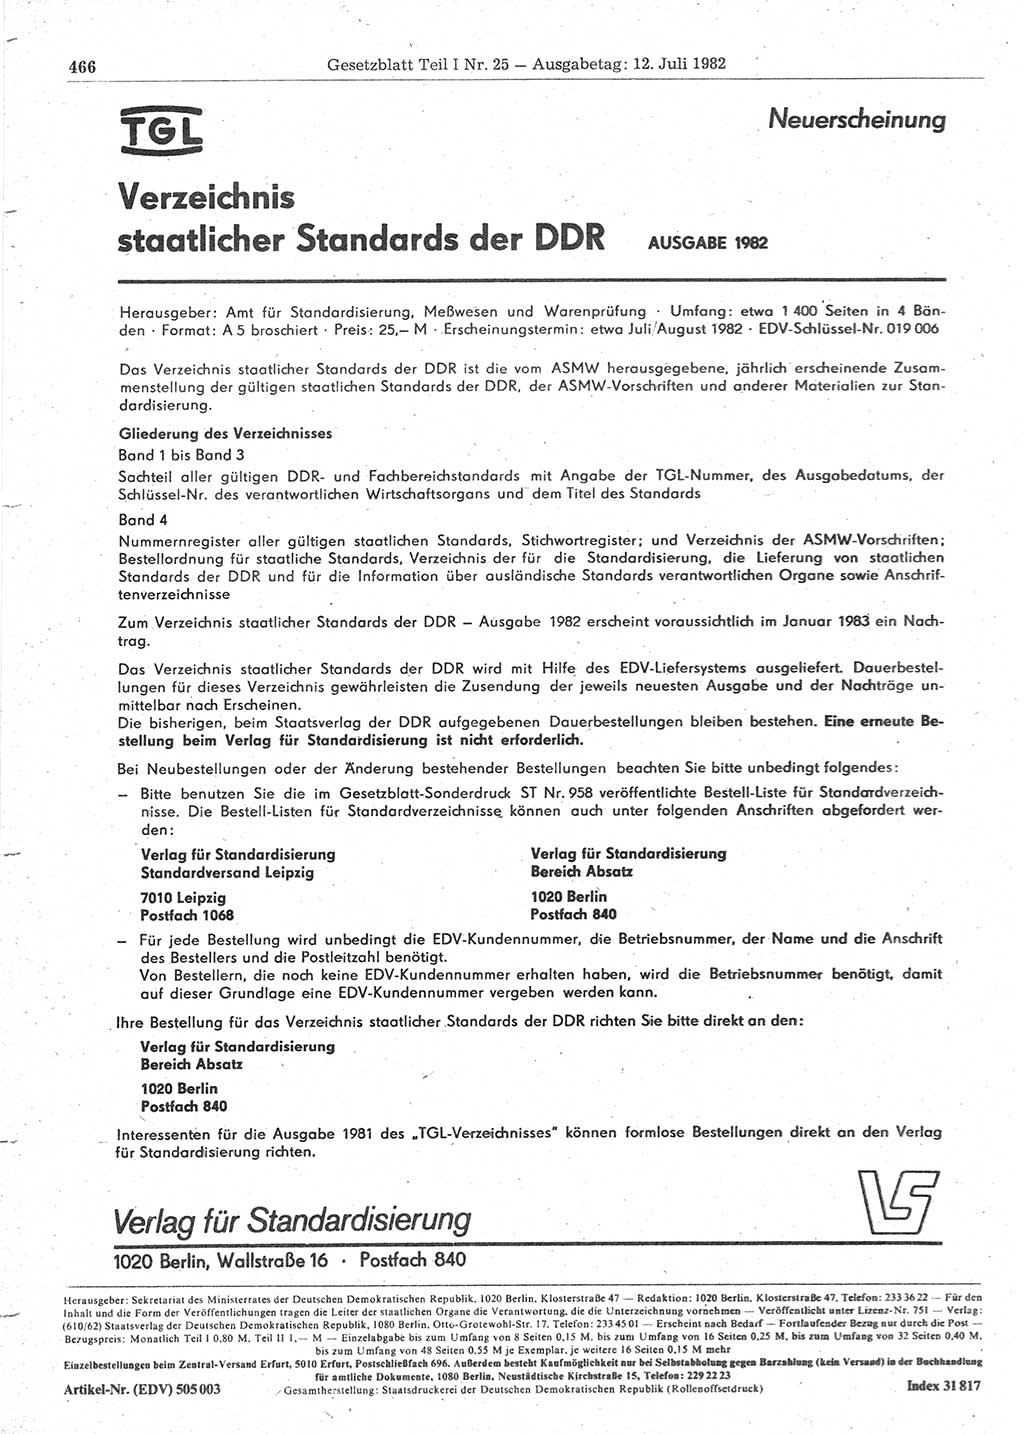 Gesetzblatt (GBl.) der Deutschen Demokratischen Republik (DDR) Teil Ⅰ 1982, Seite 466 (GBl. DDR Ⅰ 1982, S. 466)